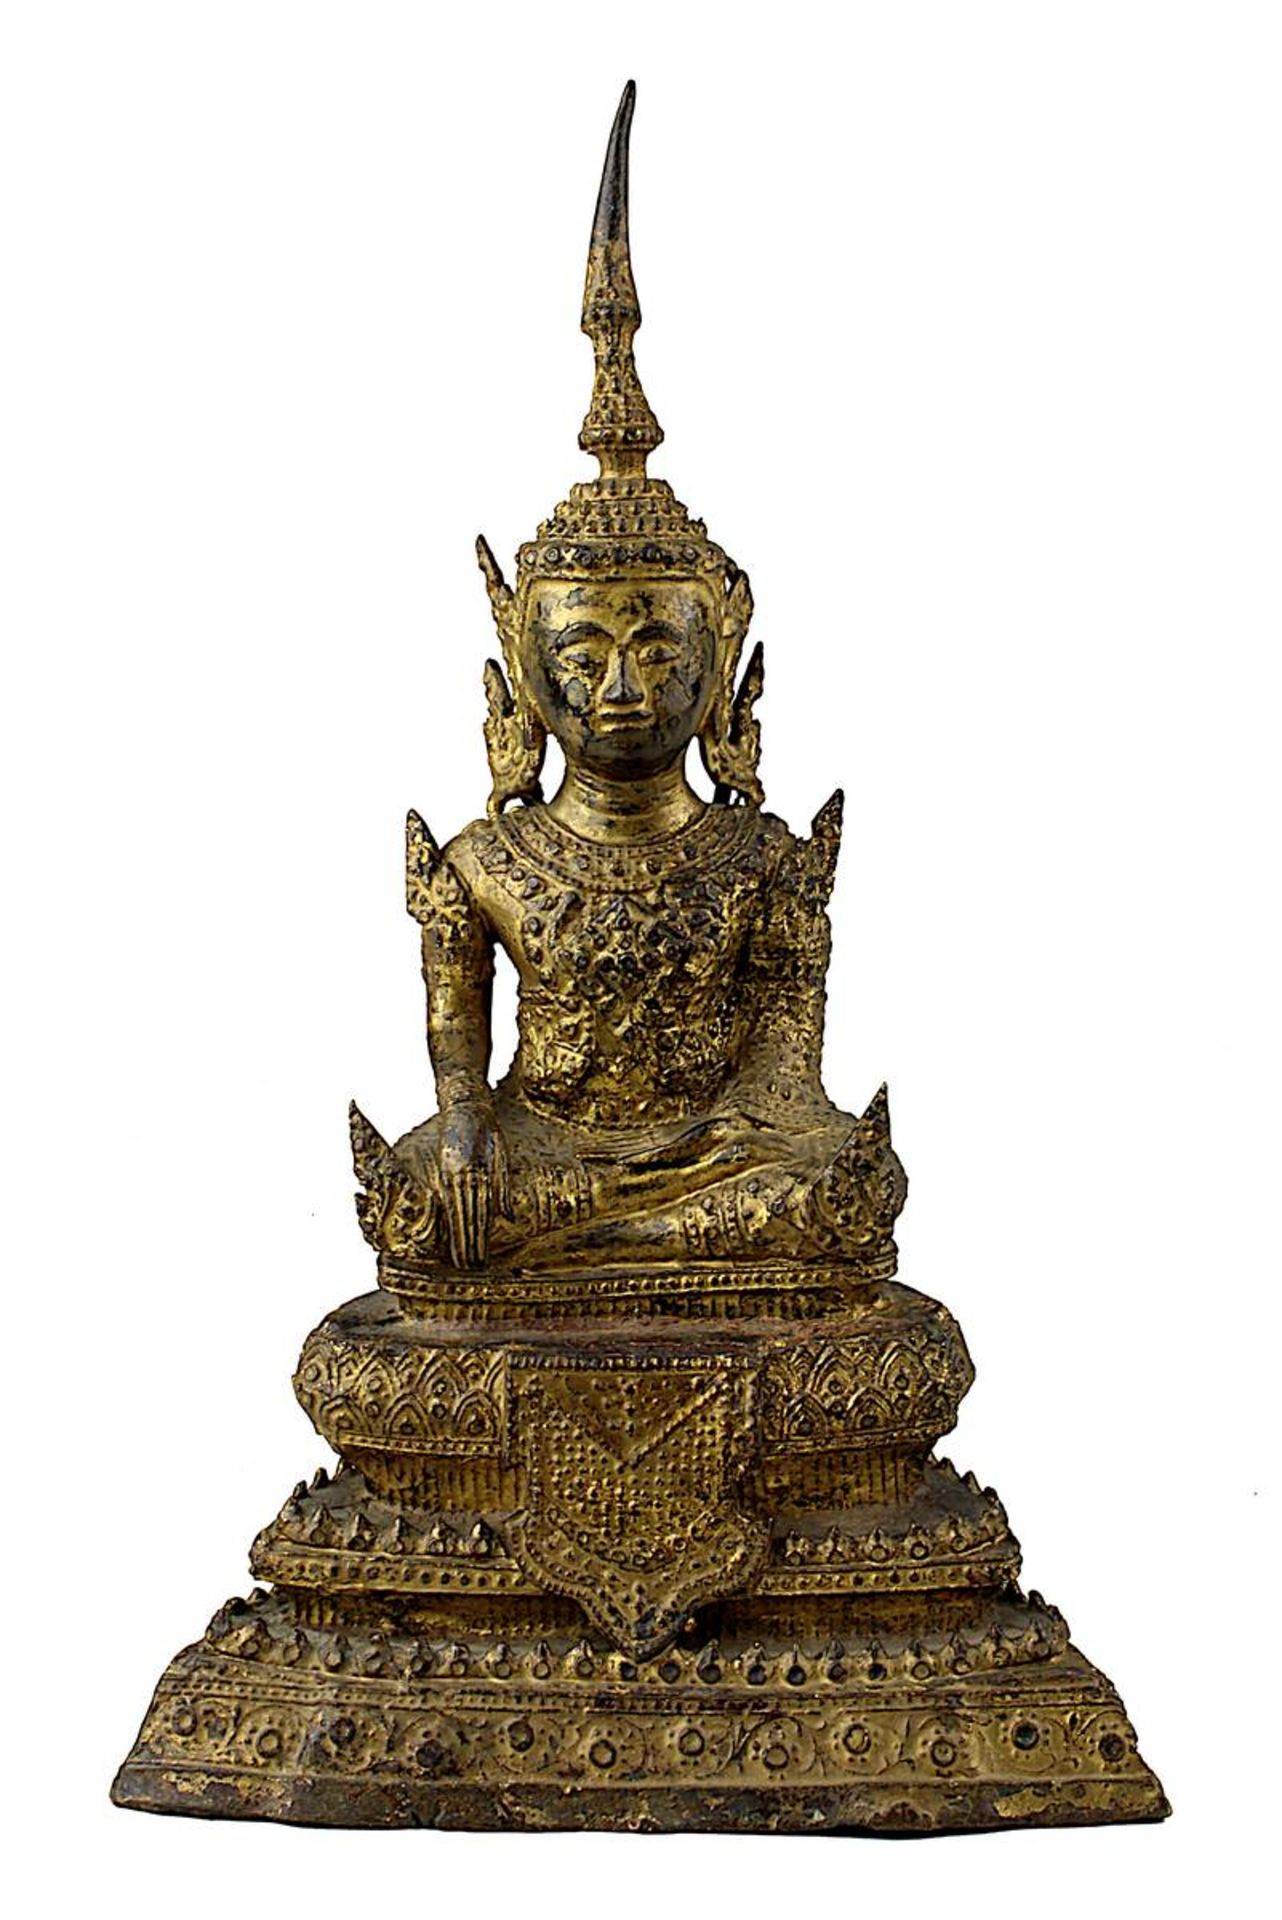 Bronzebuddha, Siam 19. Jh. Rattanakosin, in meditierender Haltung im Lotussitz, auf dreifach